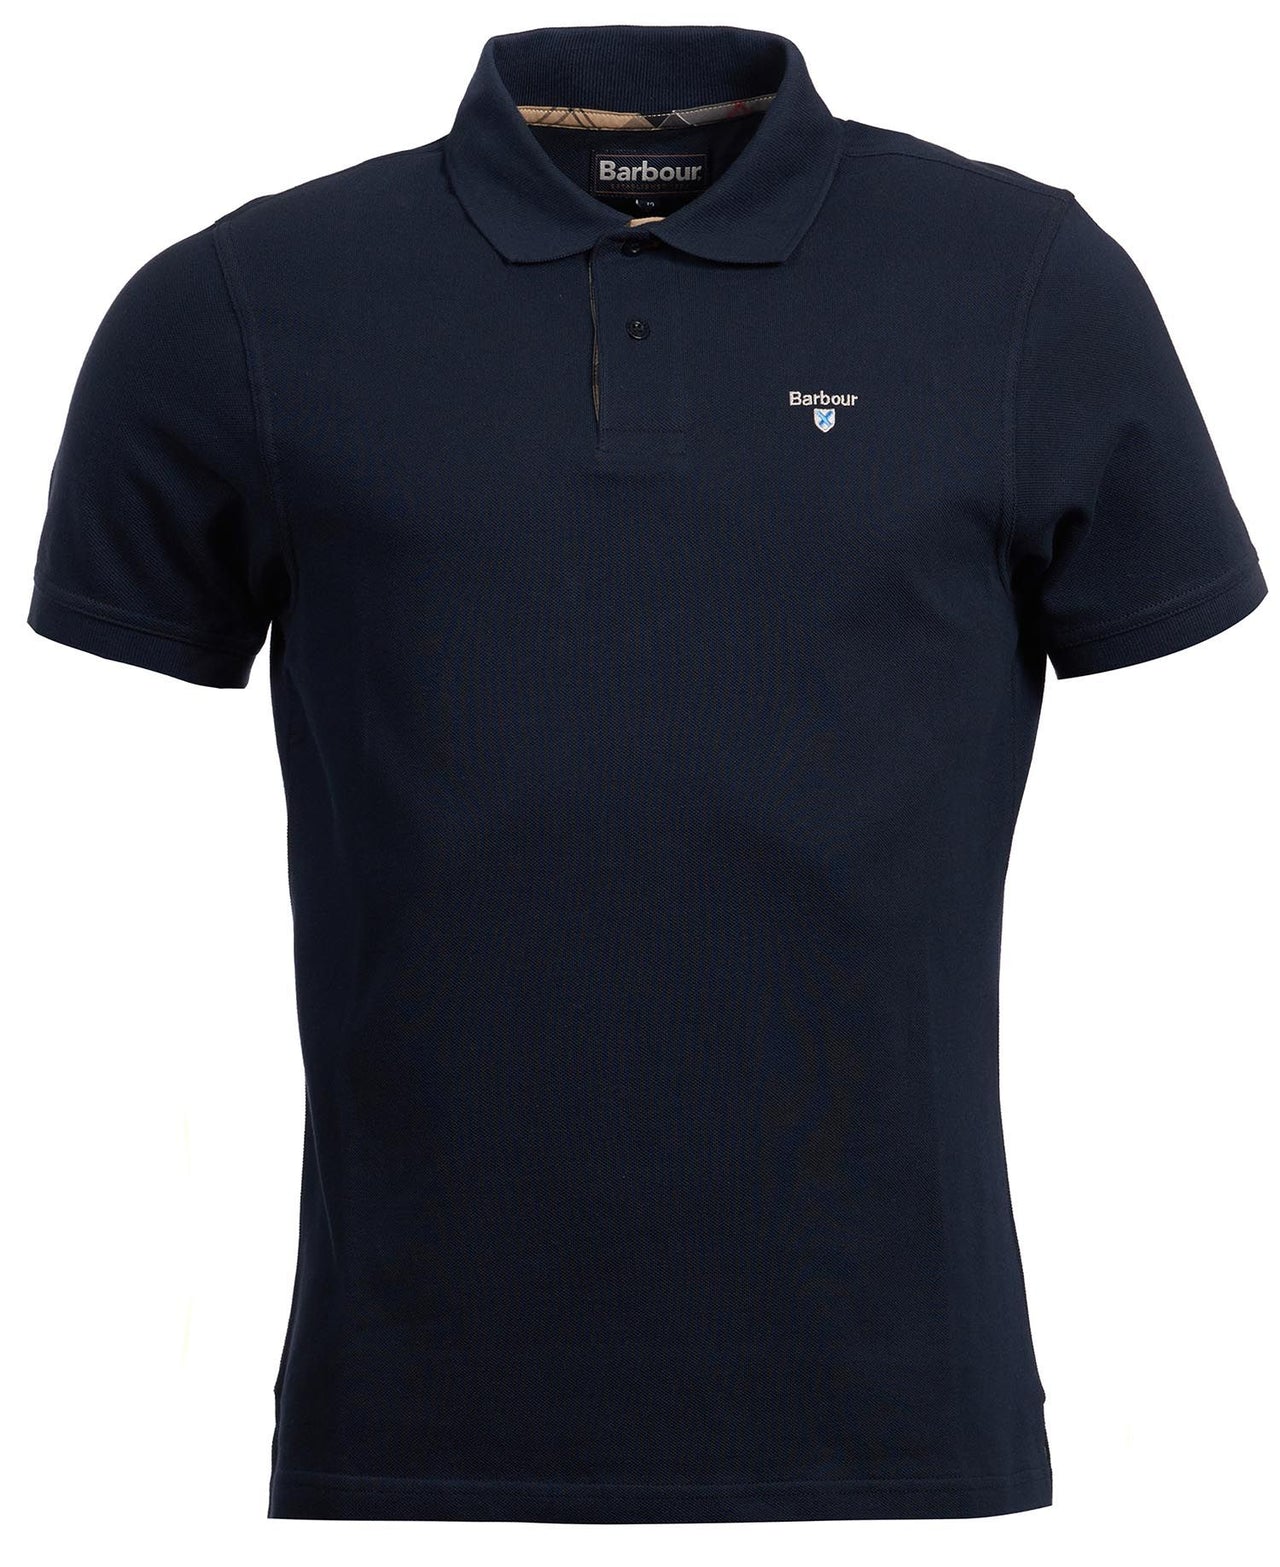 Barbour Tartan Pique Polo Shirt - New Navy